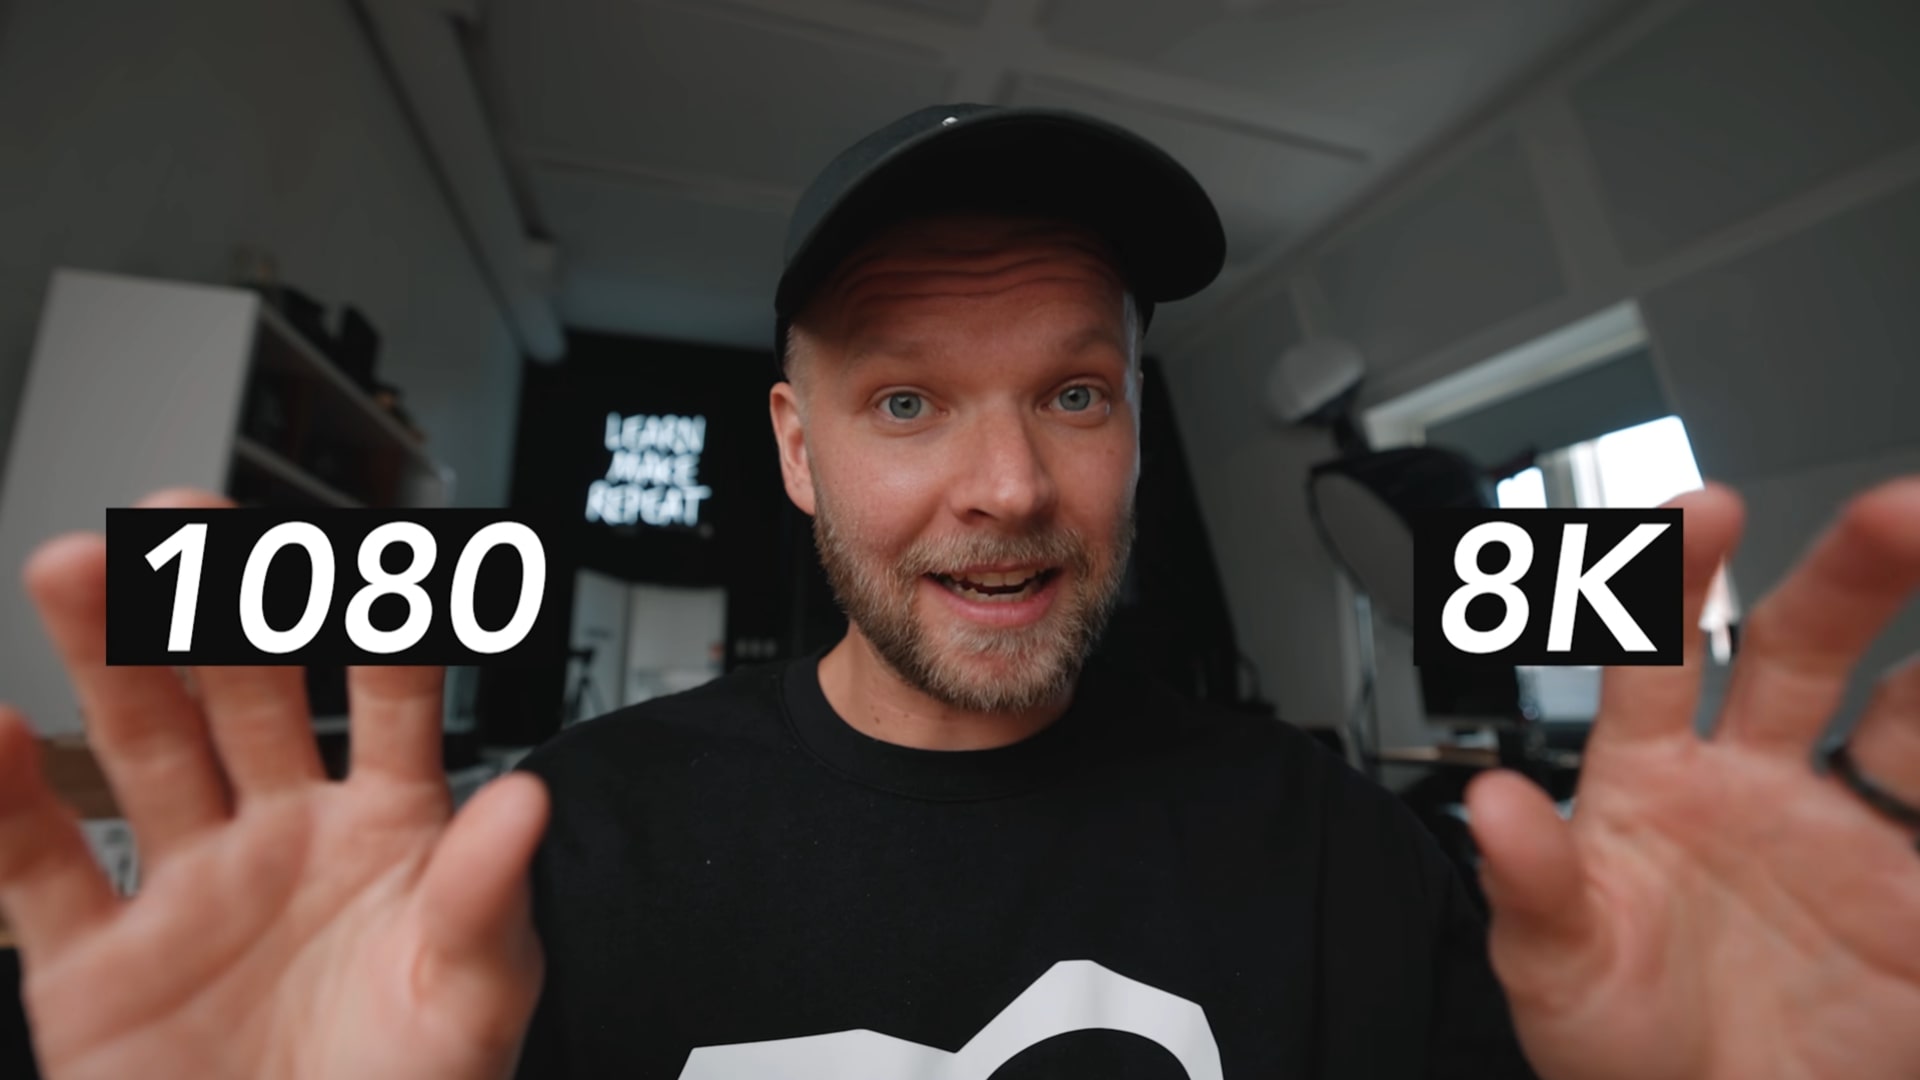 Bạn có phân biệt được sự khác nhau giữa 1080p và 8K trong video dưới đây không?